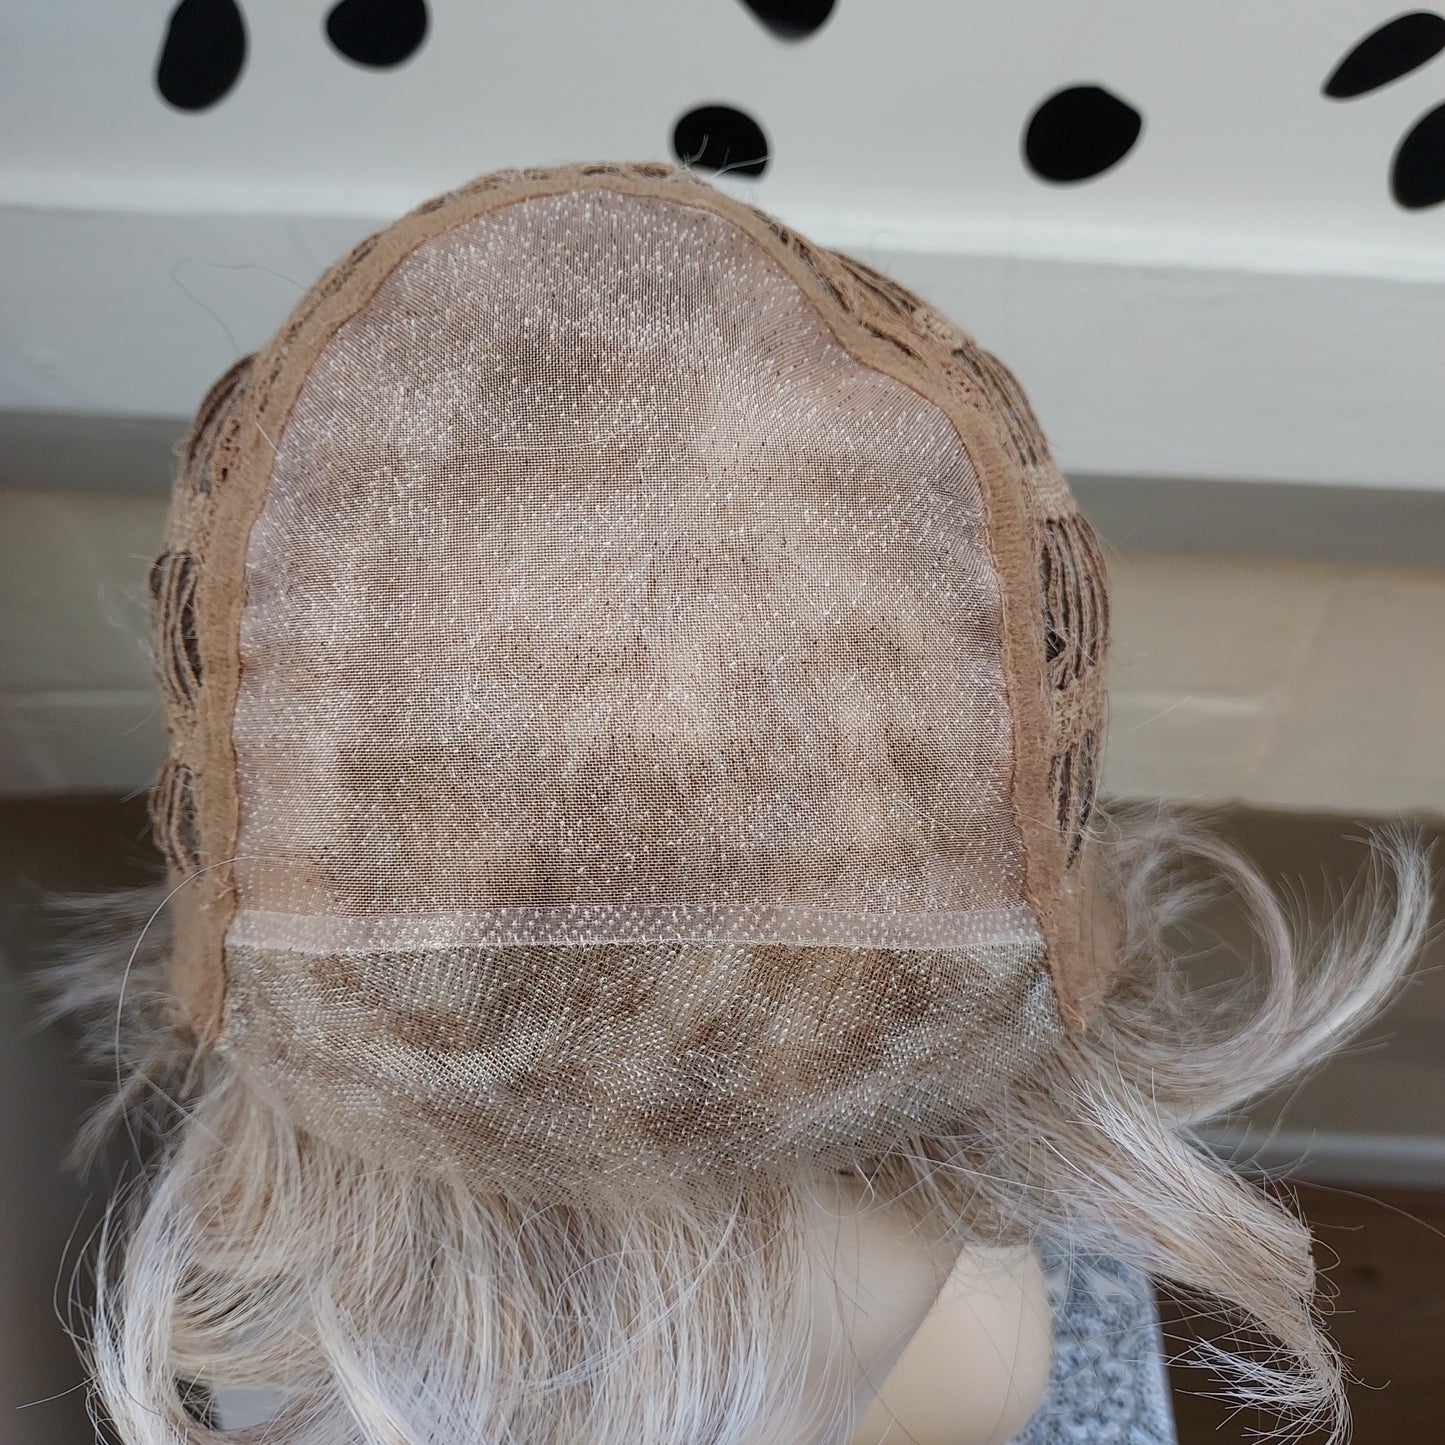 Rita HD synthetic wig in 101F48T by Jon Renau